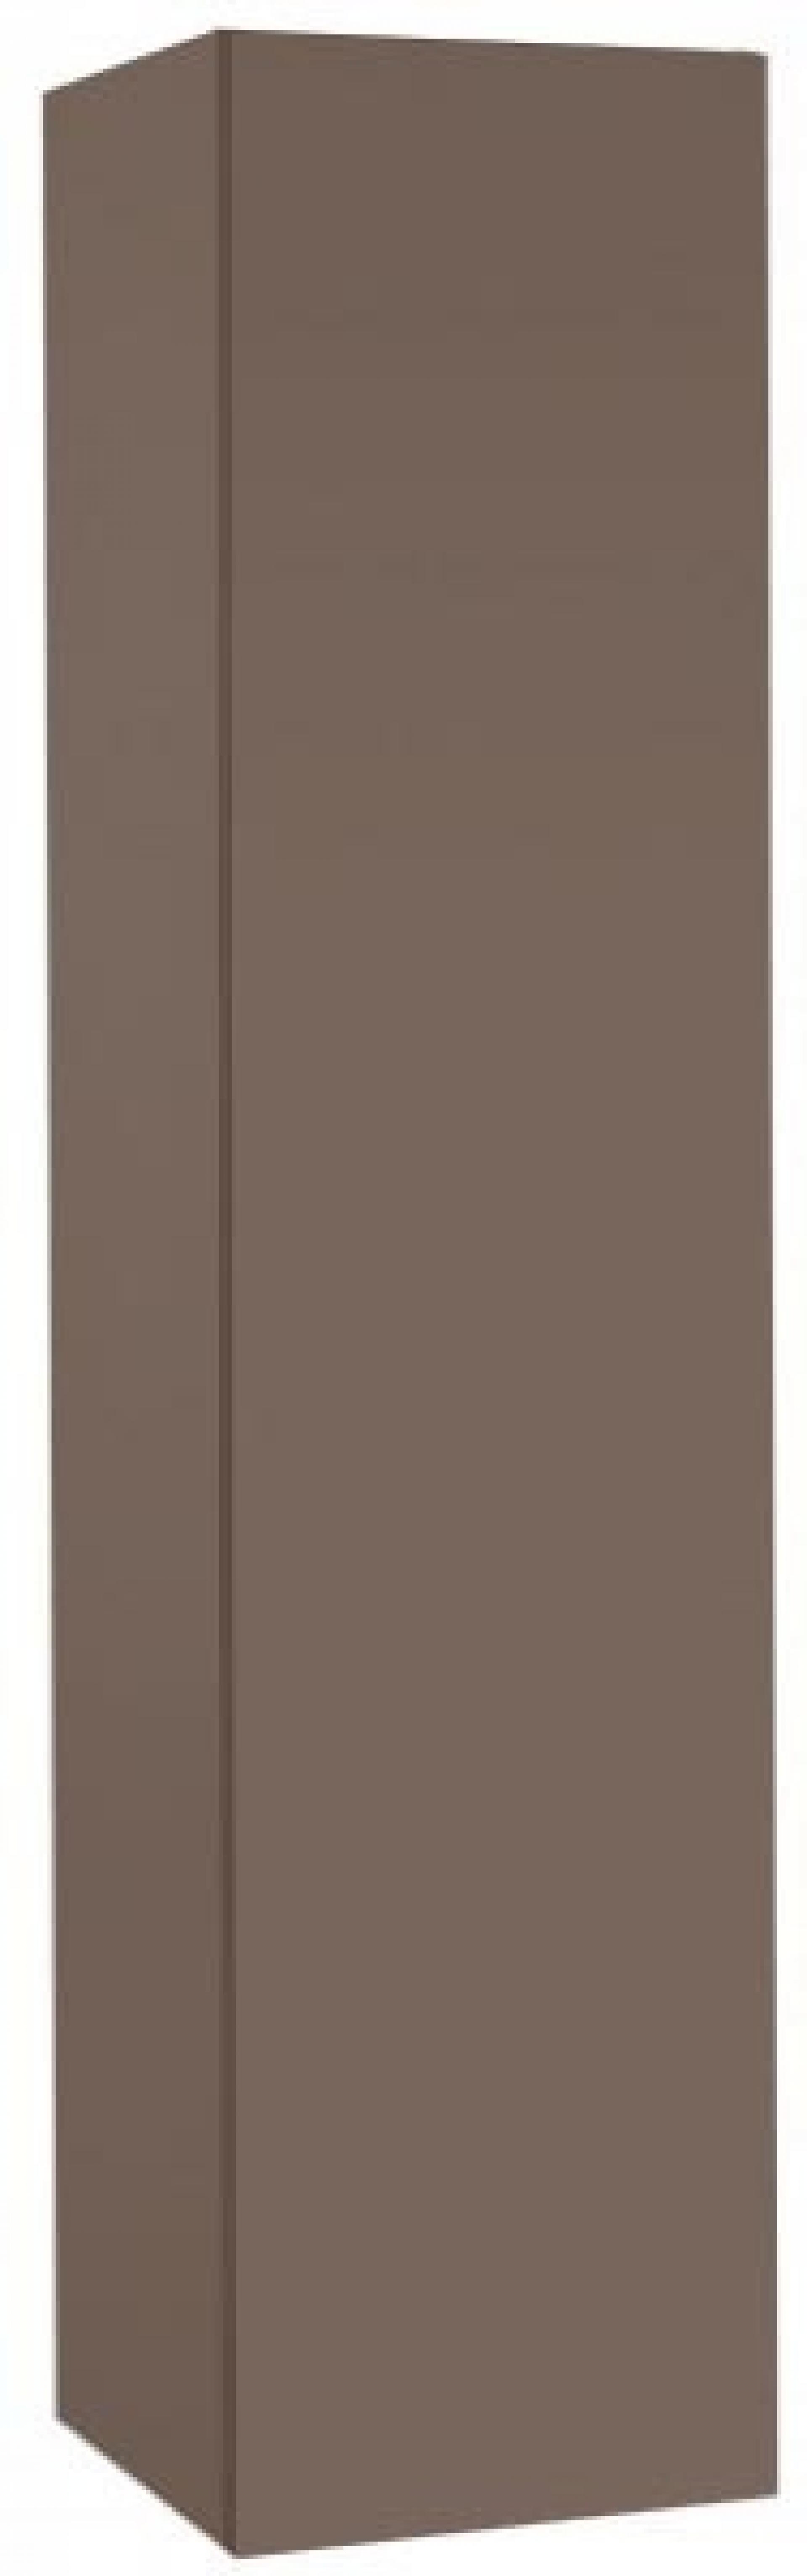 Шкаф-пенал Jacob Delafon Rythmik EB998-G80 светло-коричневый лак